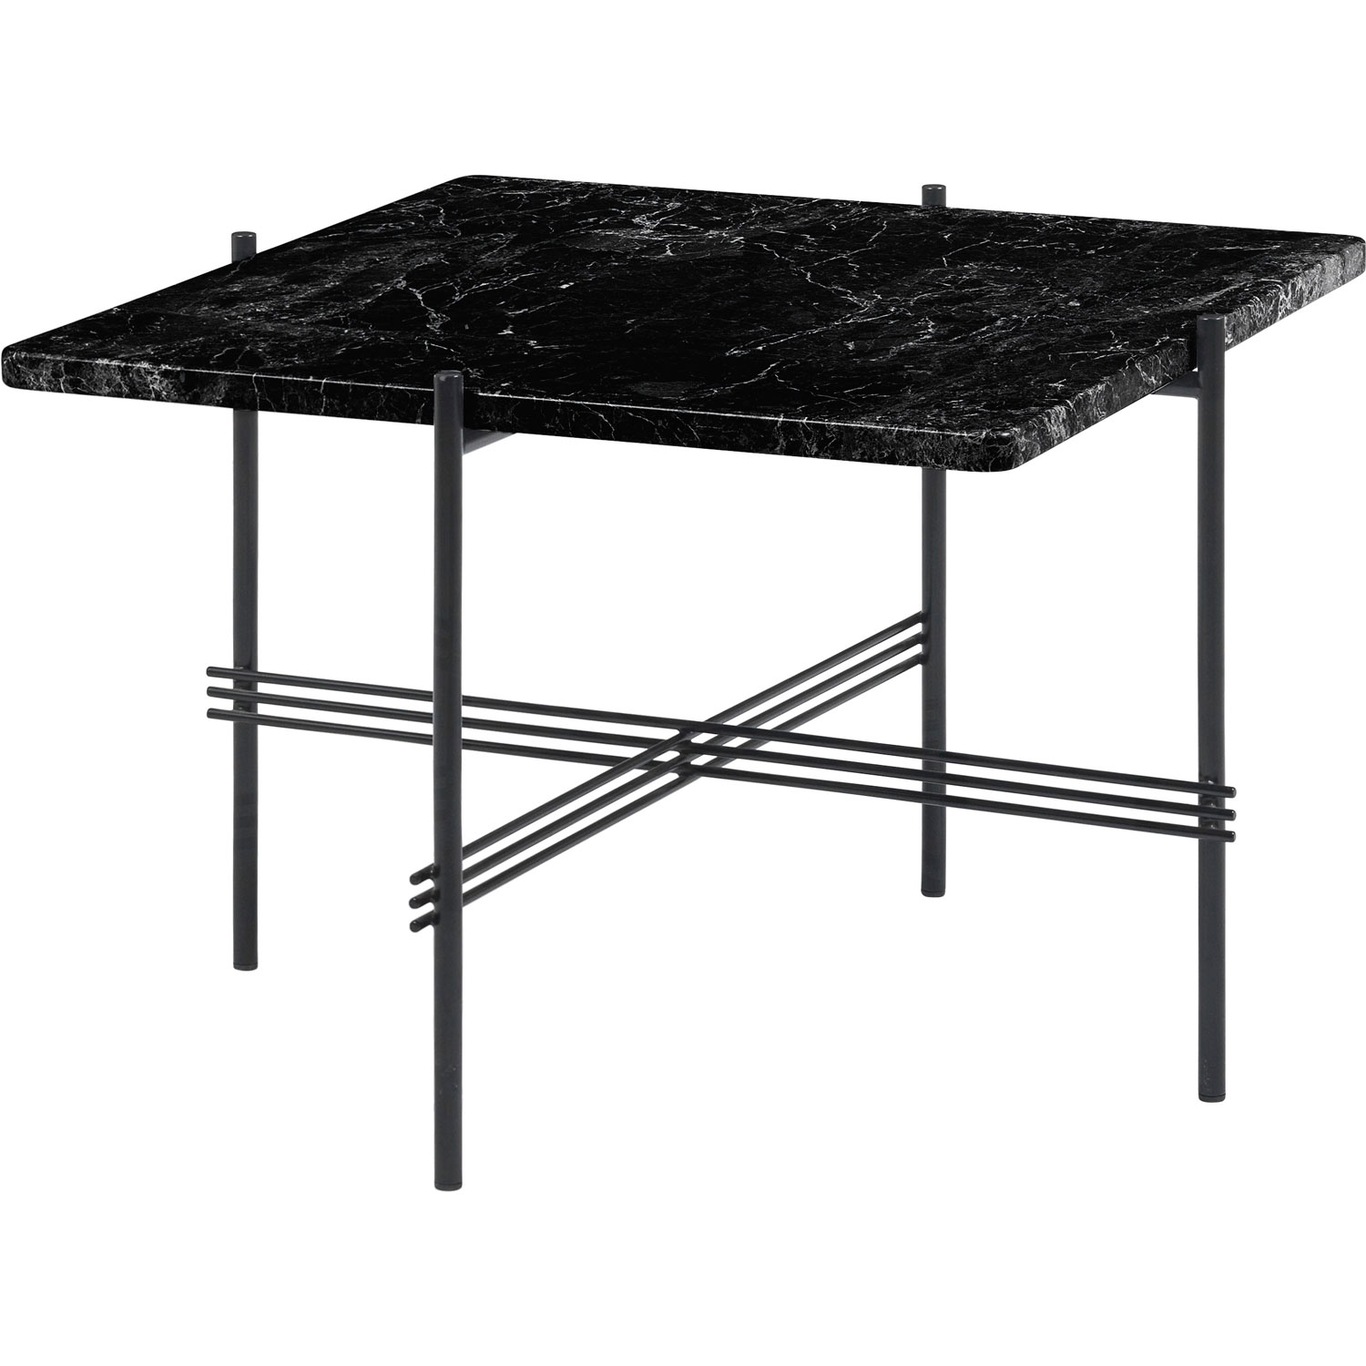 TS Coffee Table 55x55 cm, Black / Black Marble